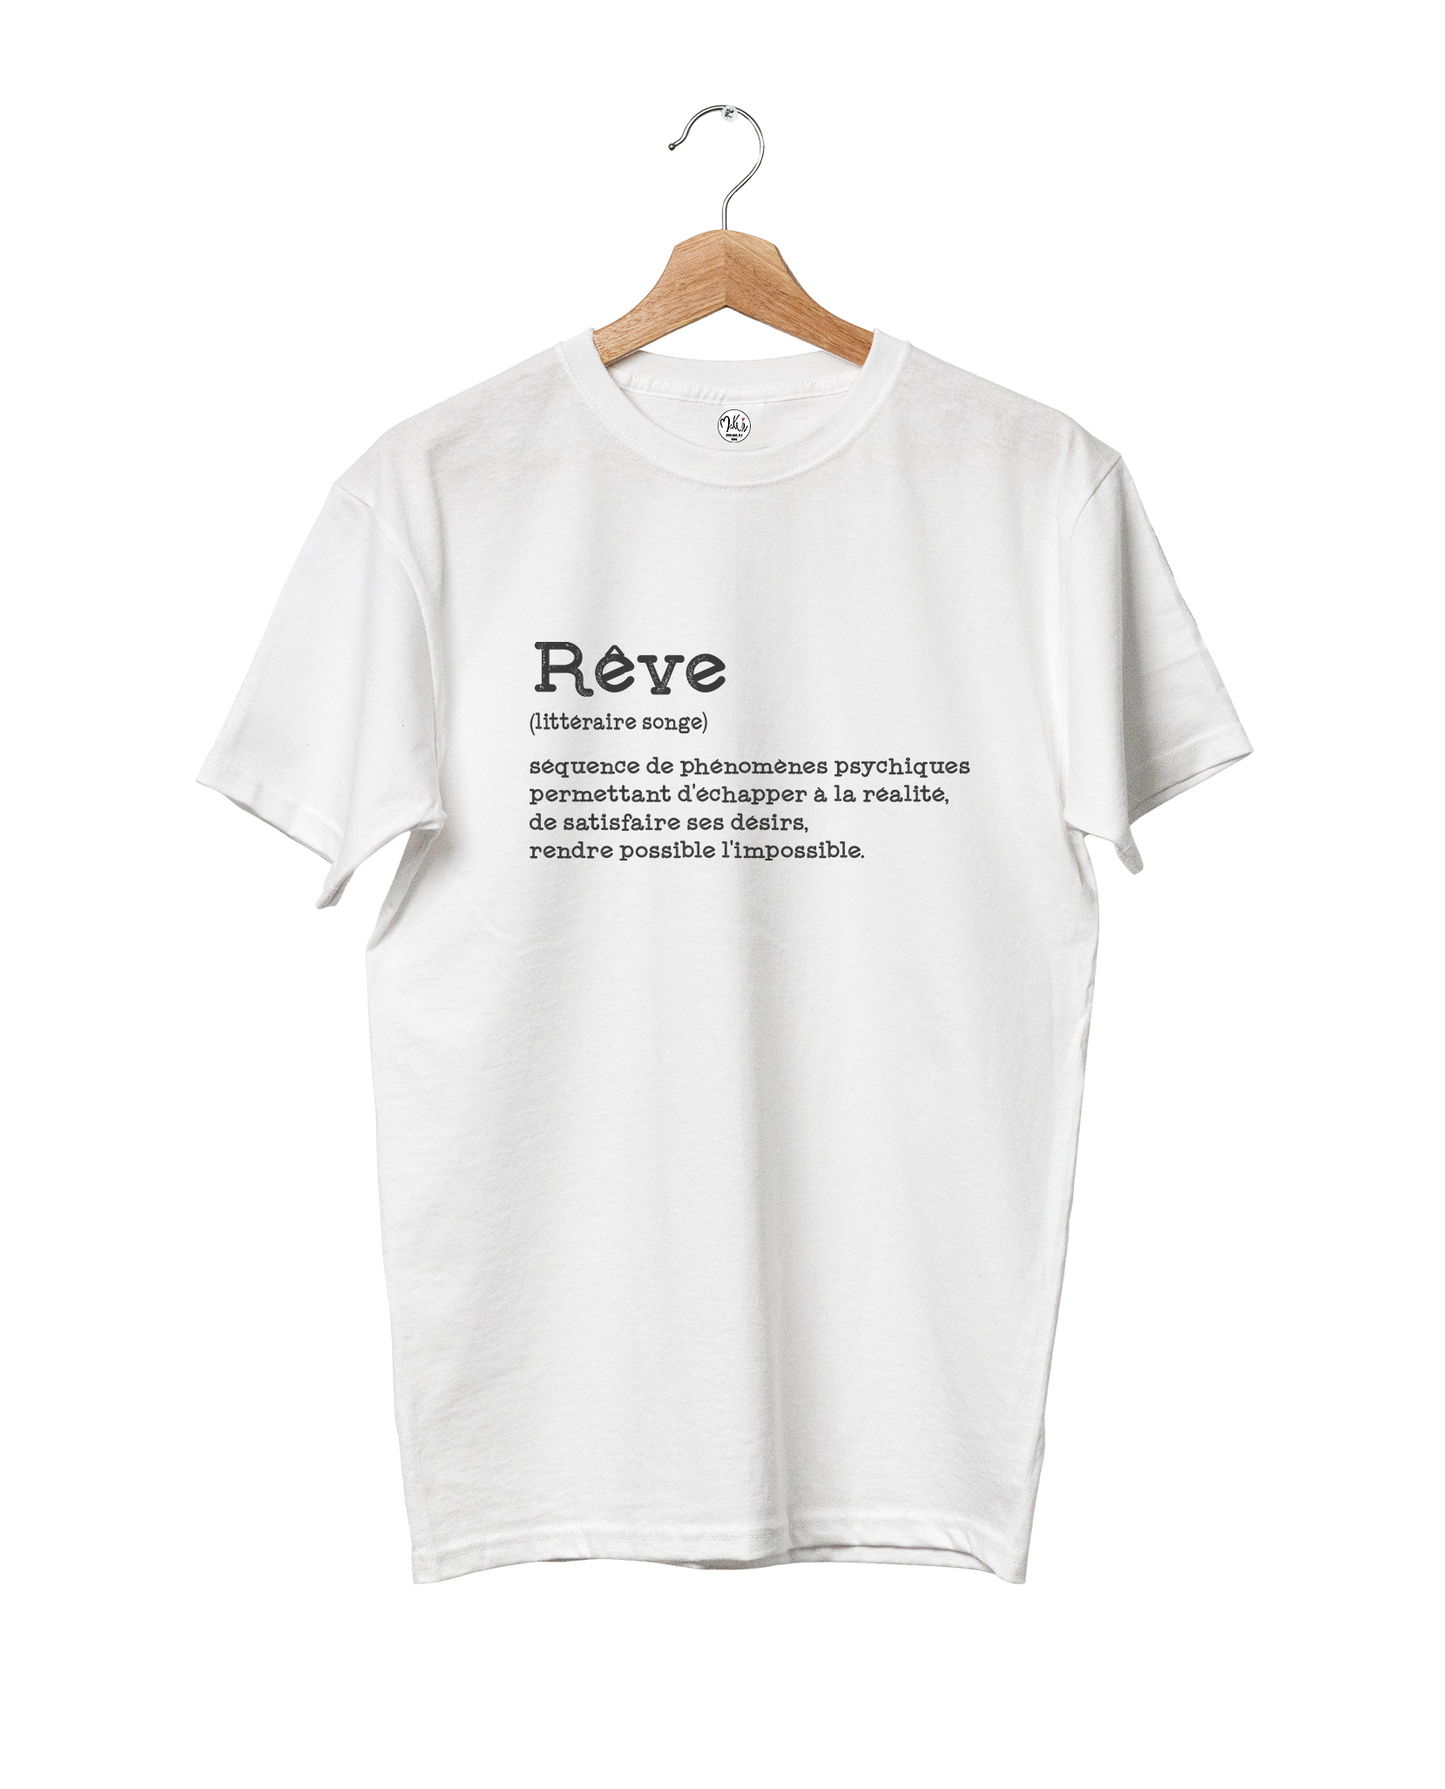 T-shirt Rêve